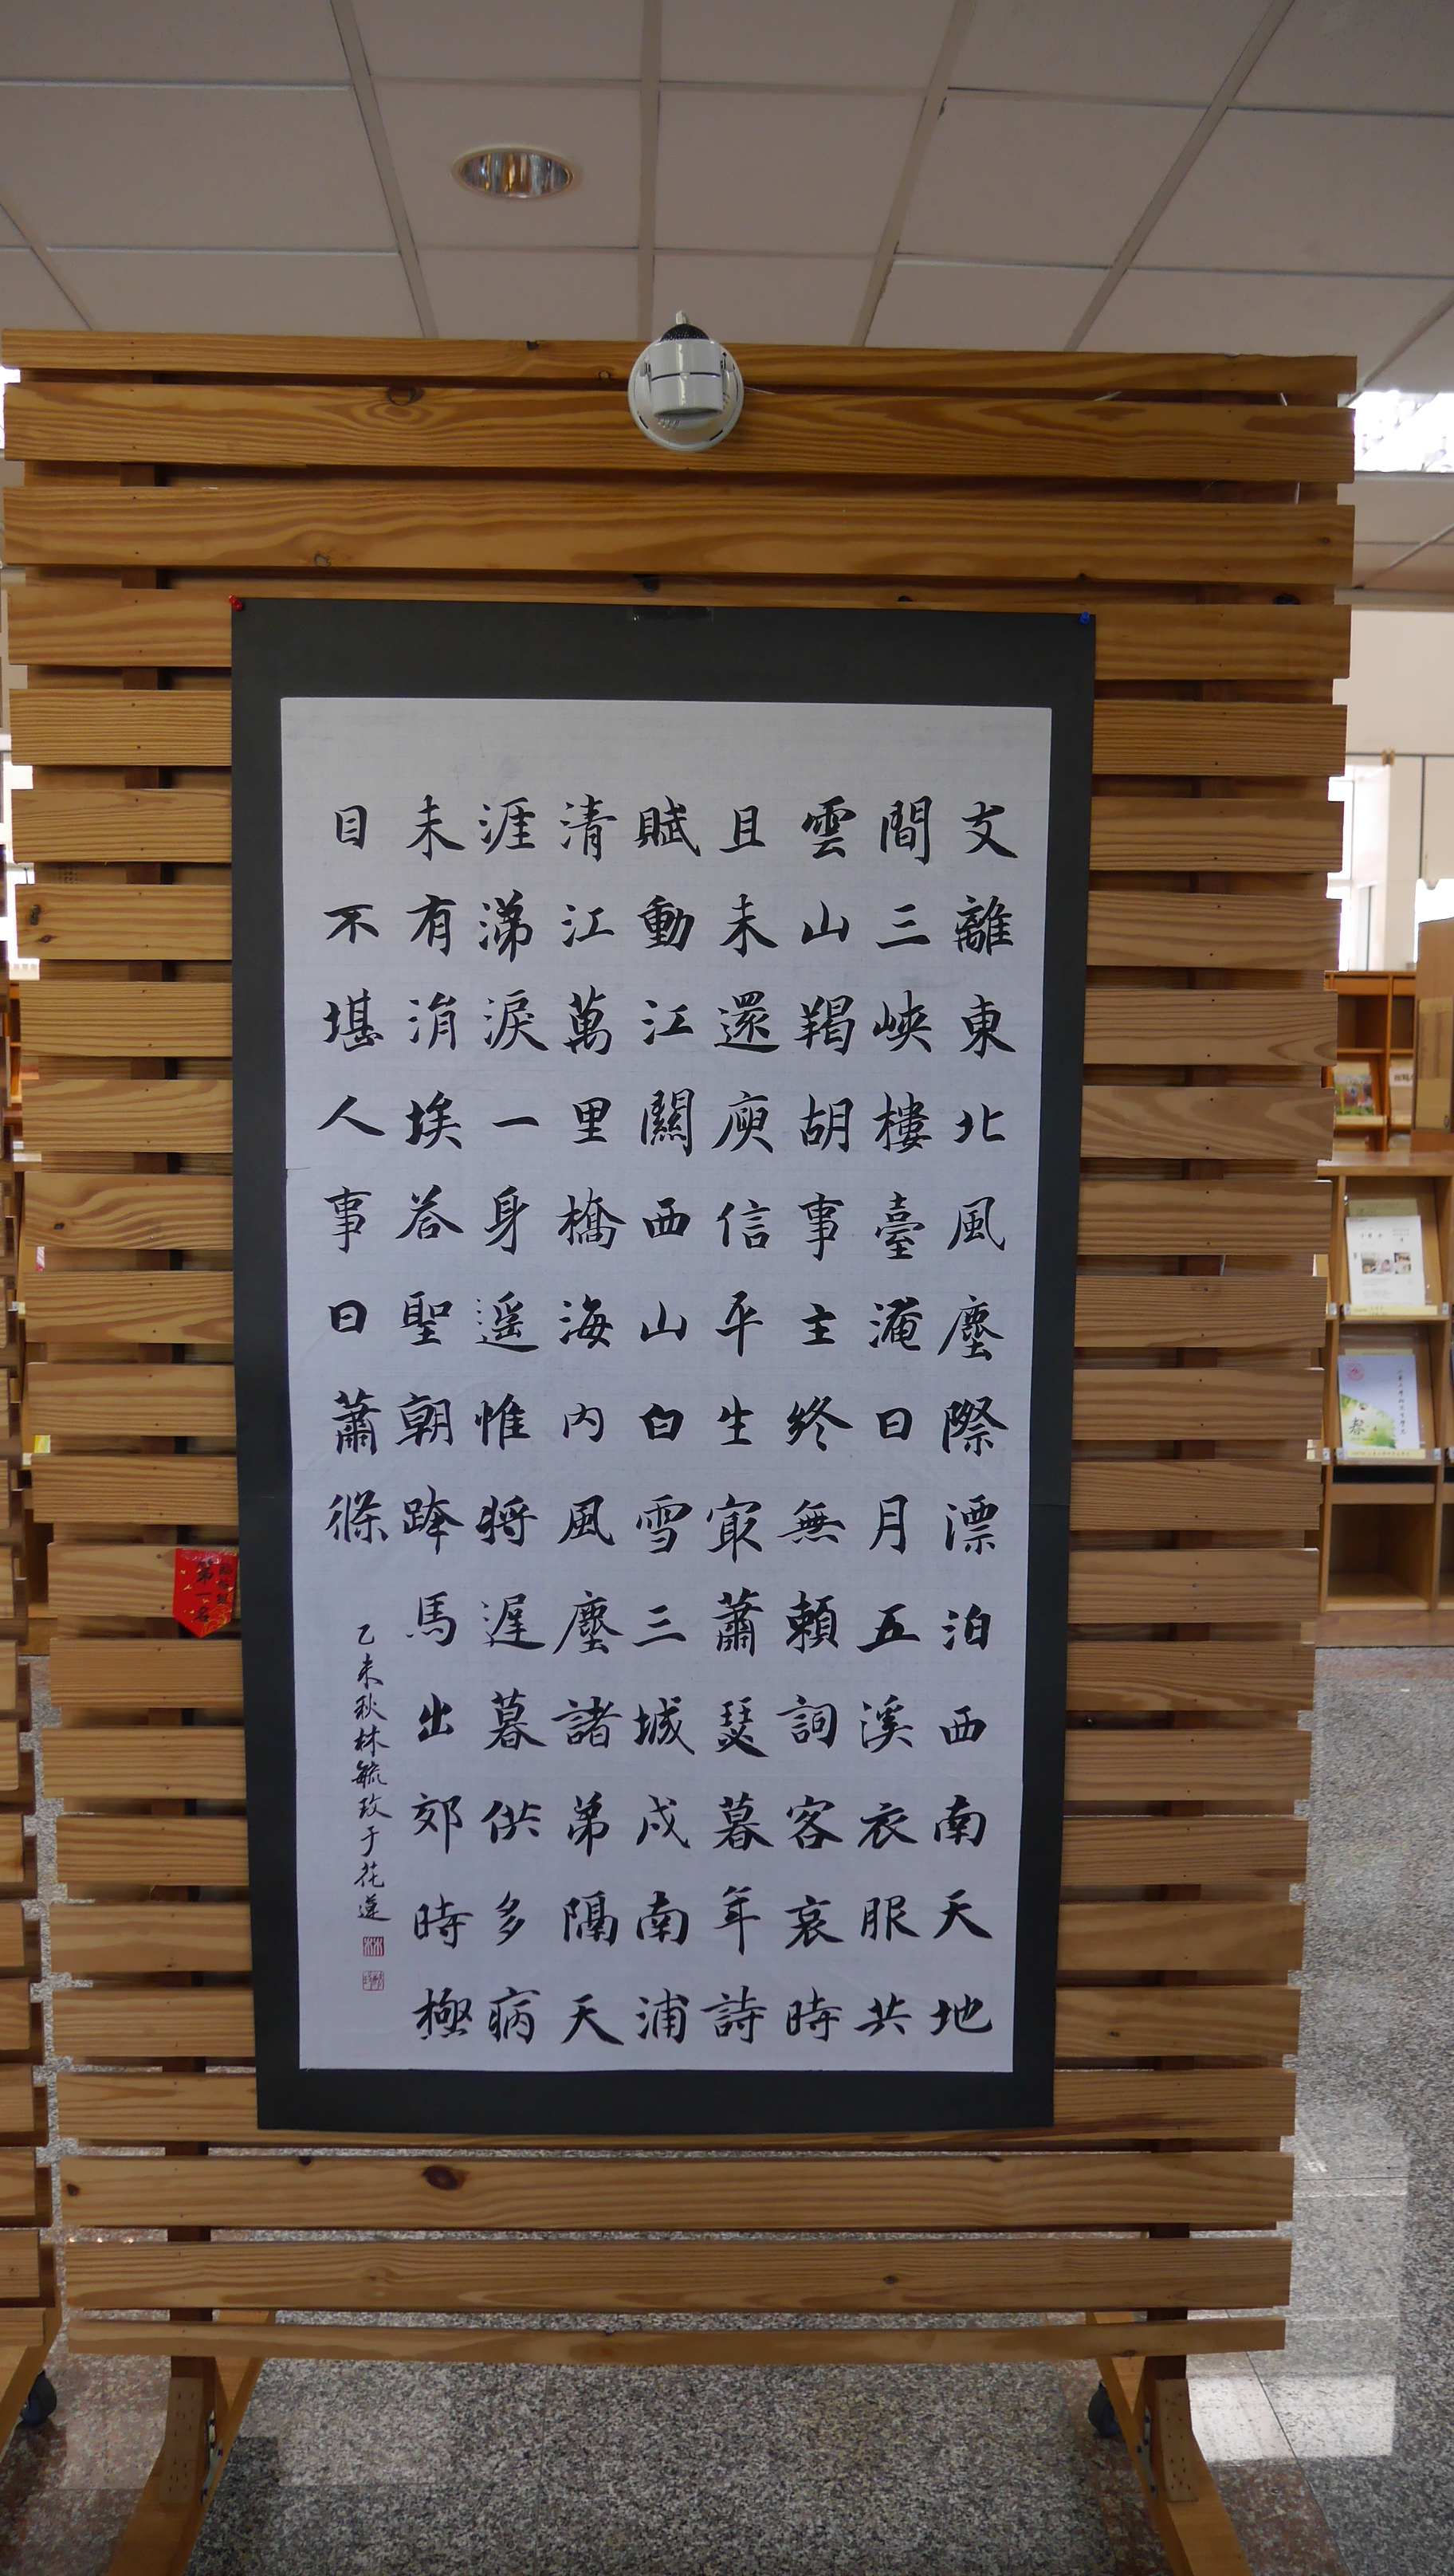 傳統書法組第一名 藝設三林毓玫同學